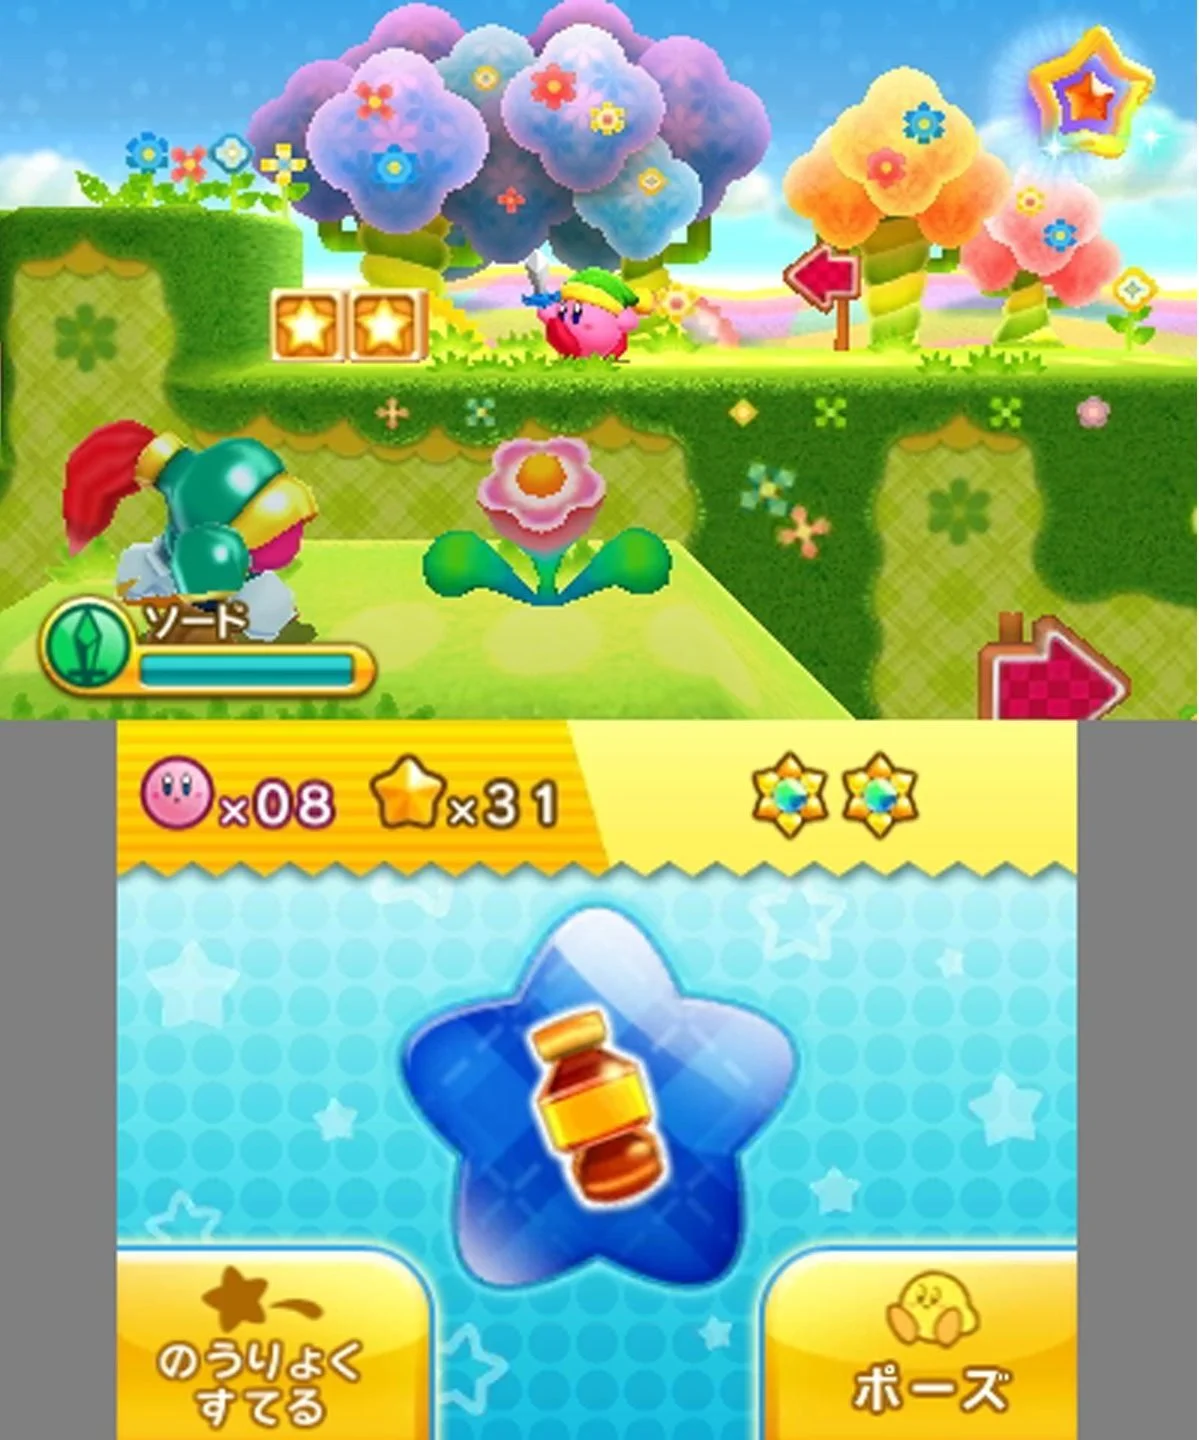 Рецензия на Kirby: Triple Deluxe - фото 1